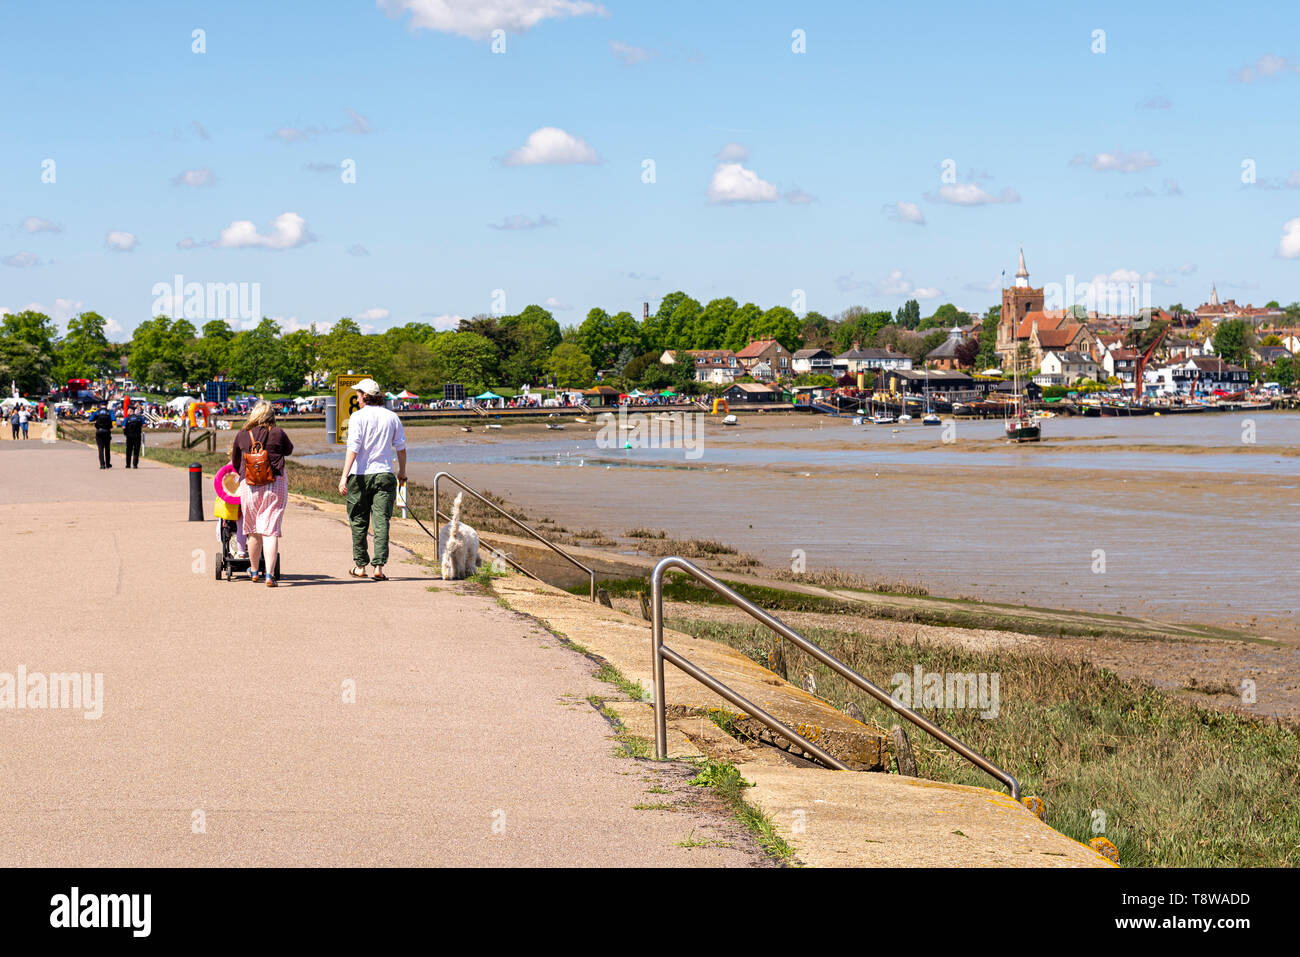 Menschen zu Fuß auf die Promenade an der Maldon, Essex, Großbritannien entlang des Flusses Blackwater. Maldon Stadt im Hintergrund, Kirche, Thames sailing Lastkähne Stockfoto